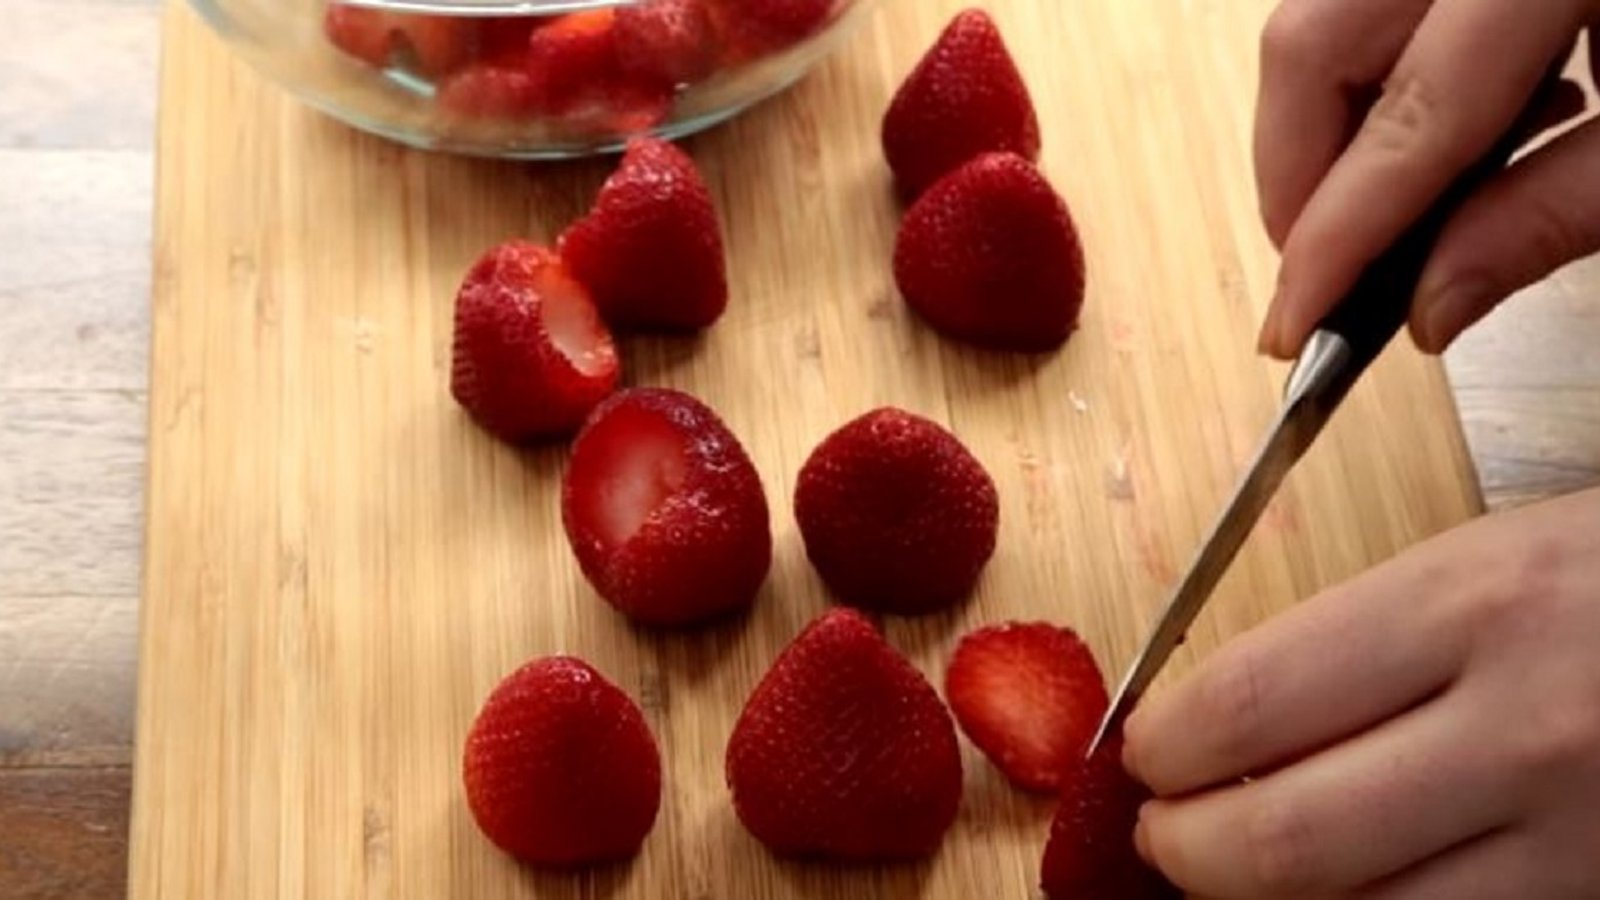 Cette recette vous permettra d'apprêter vos fraises d'une toute nouvelle façon